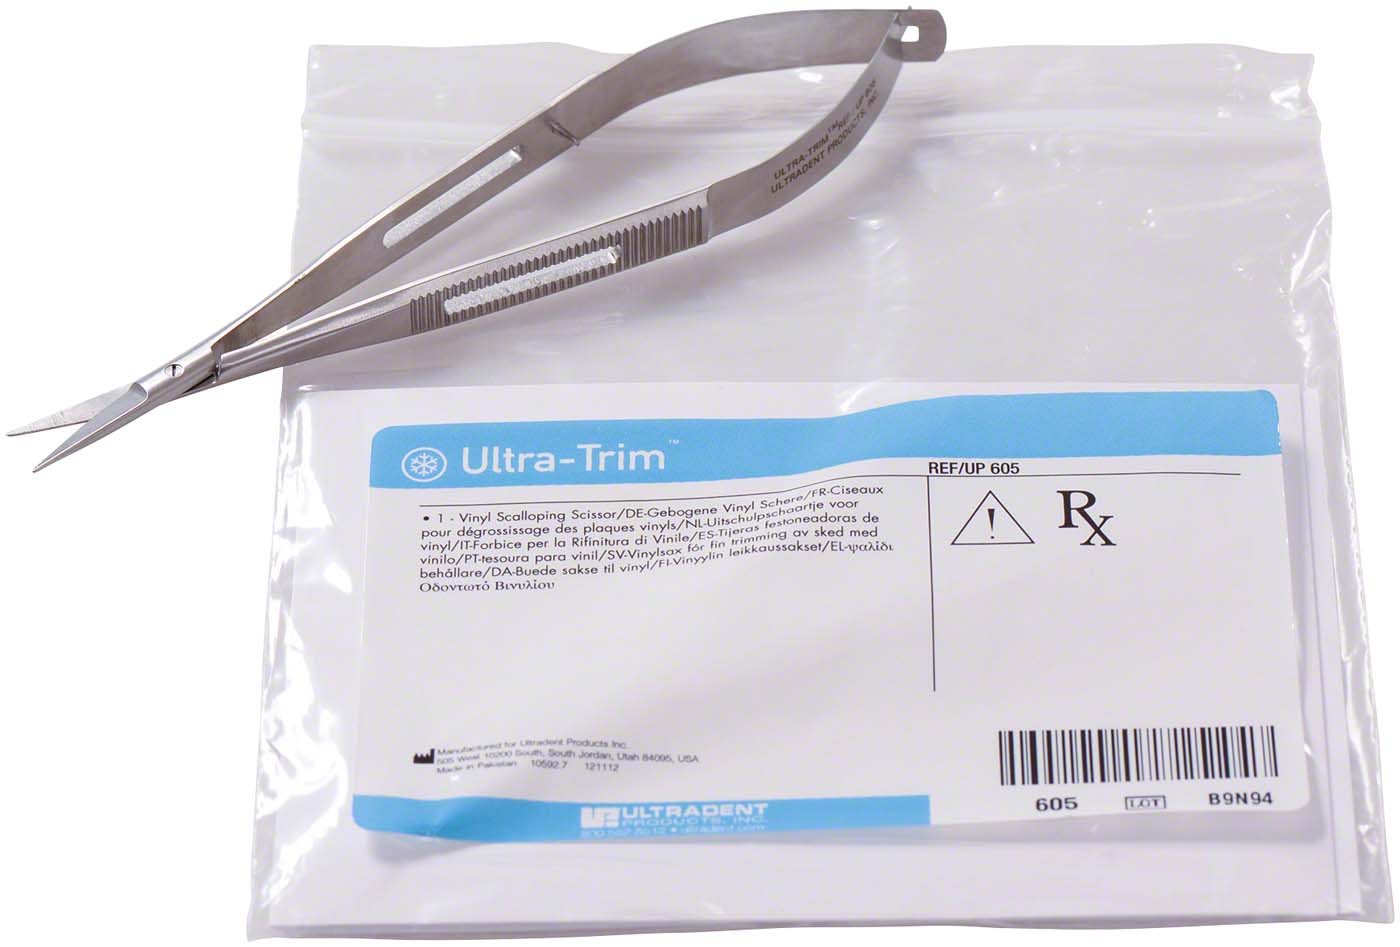 Ultra-Trimm Federschere Ultradent Products